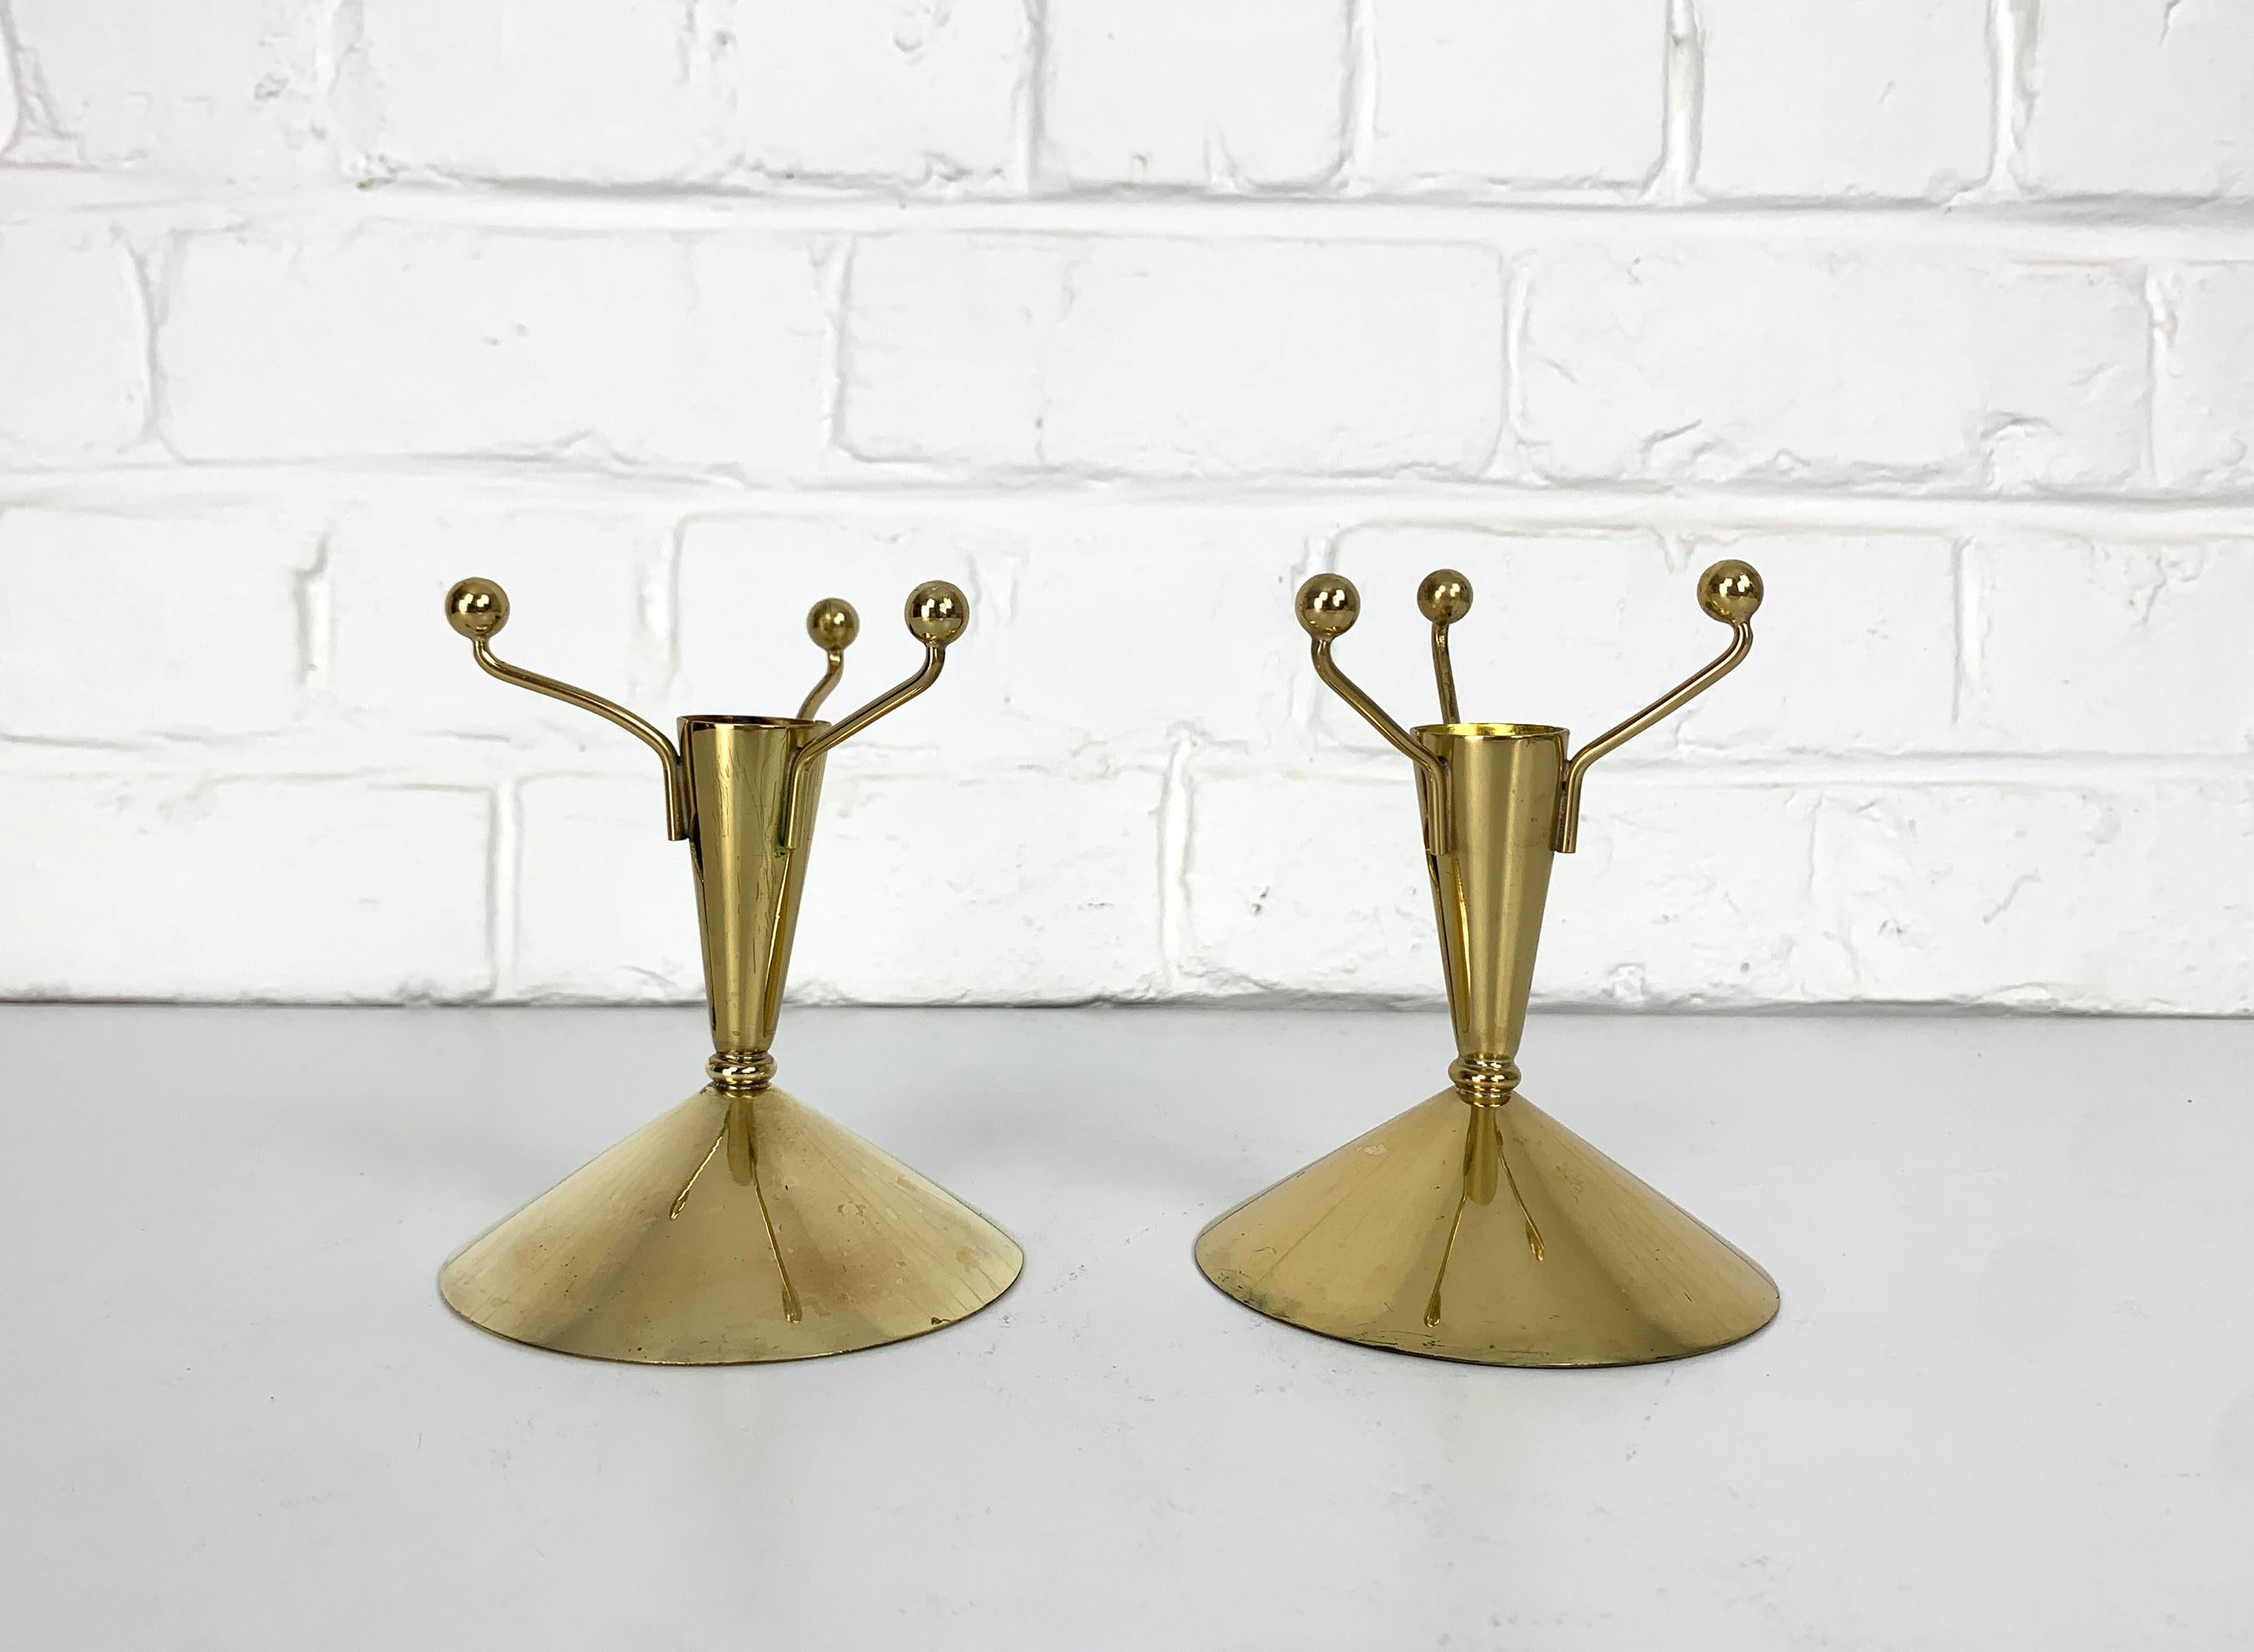 Ein Paar schwedische modernistische Kerzenständer, entworfen von Gunnar Ander. Produziert von Ystad-Metall in der schwedischen Stadt Ystad. 

Dieses verspielte Design, das vollständig aus Messing besteht, basiert auf einem Kegel mit 3 Kugeln, die